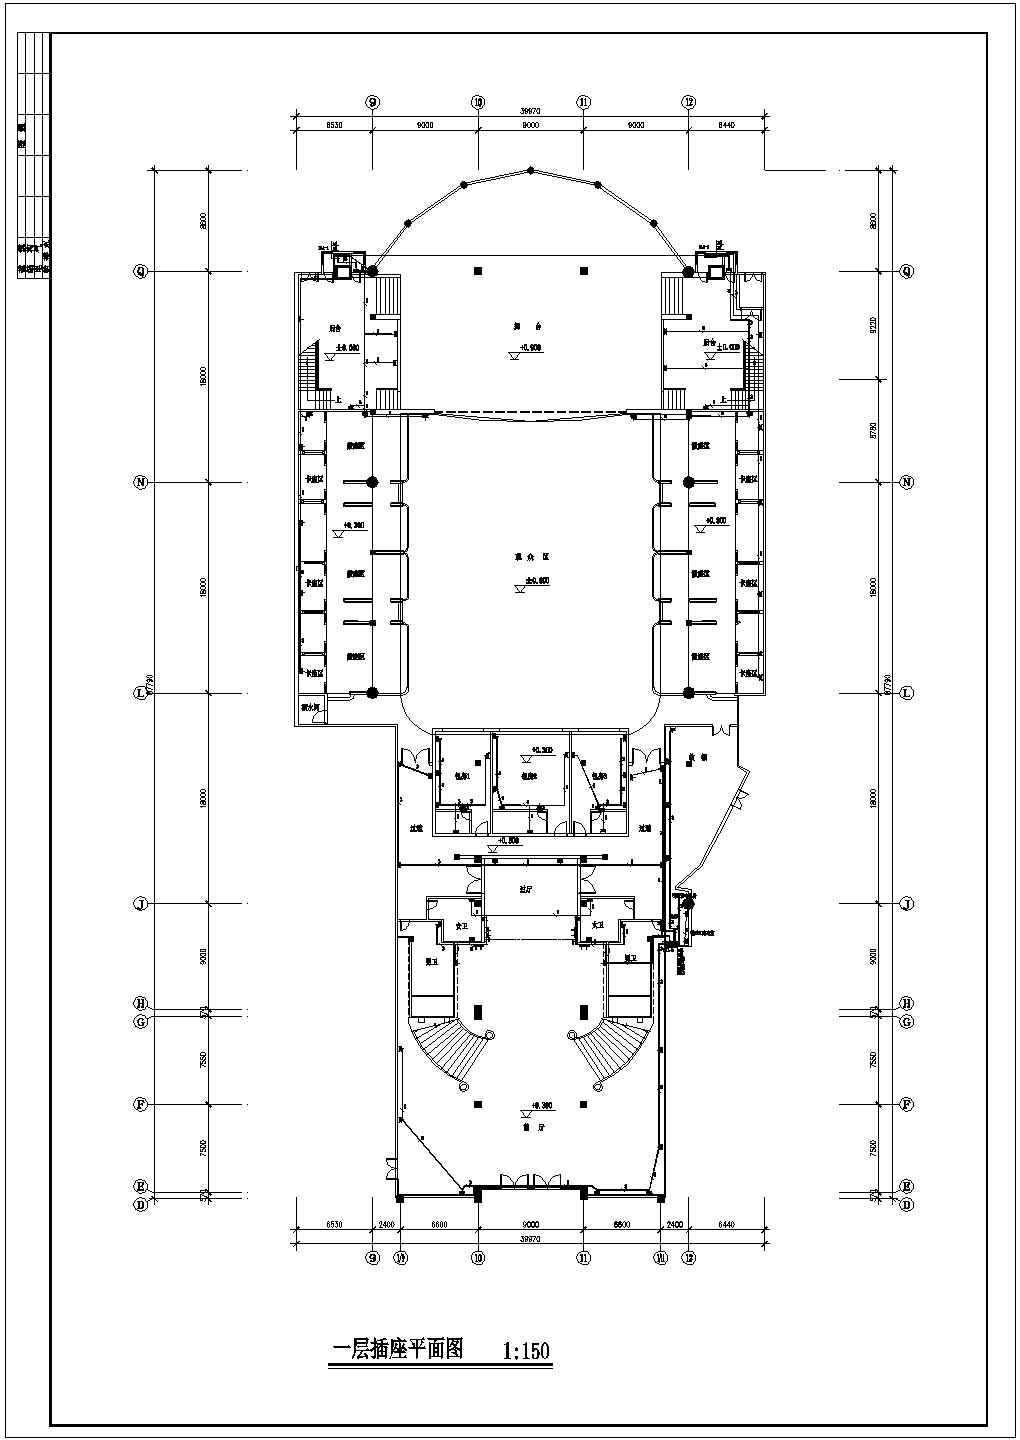 中国会所歌剧院电气施工图CAD图纸